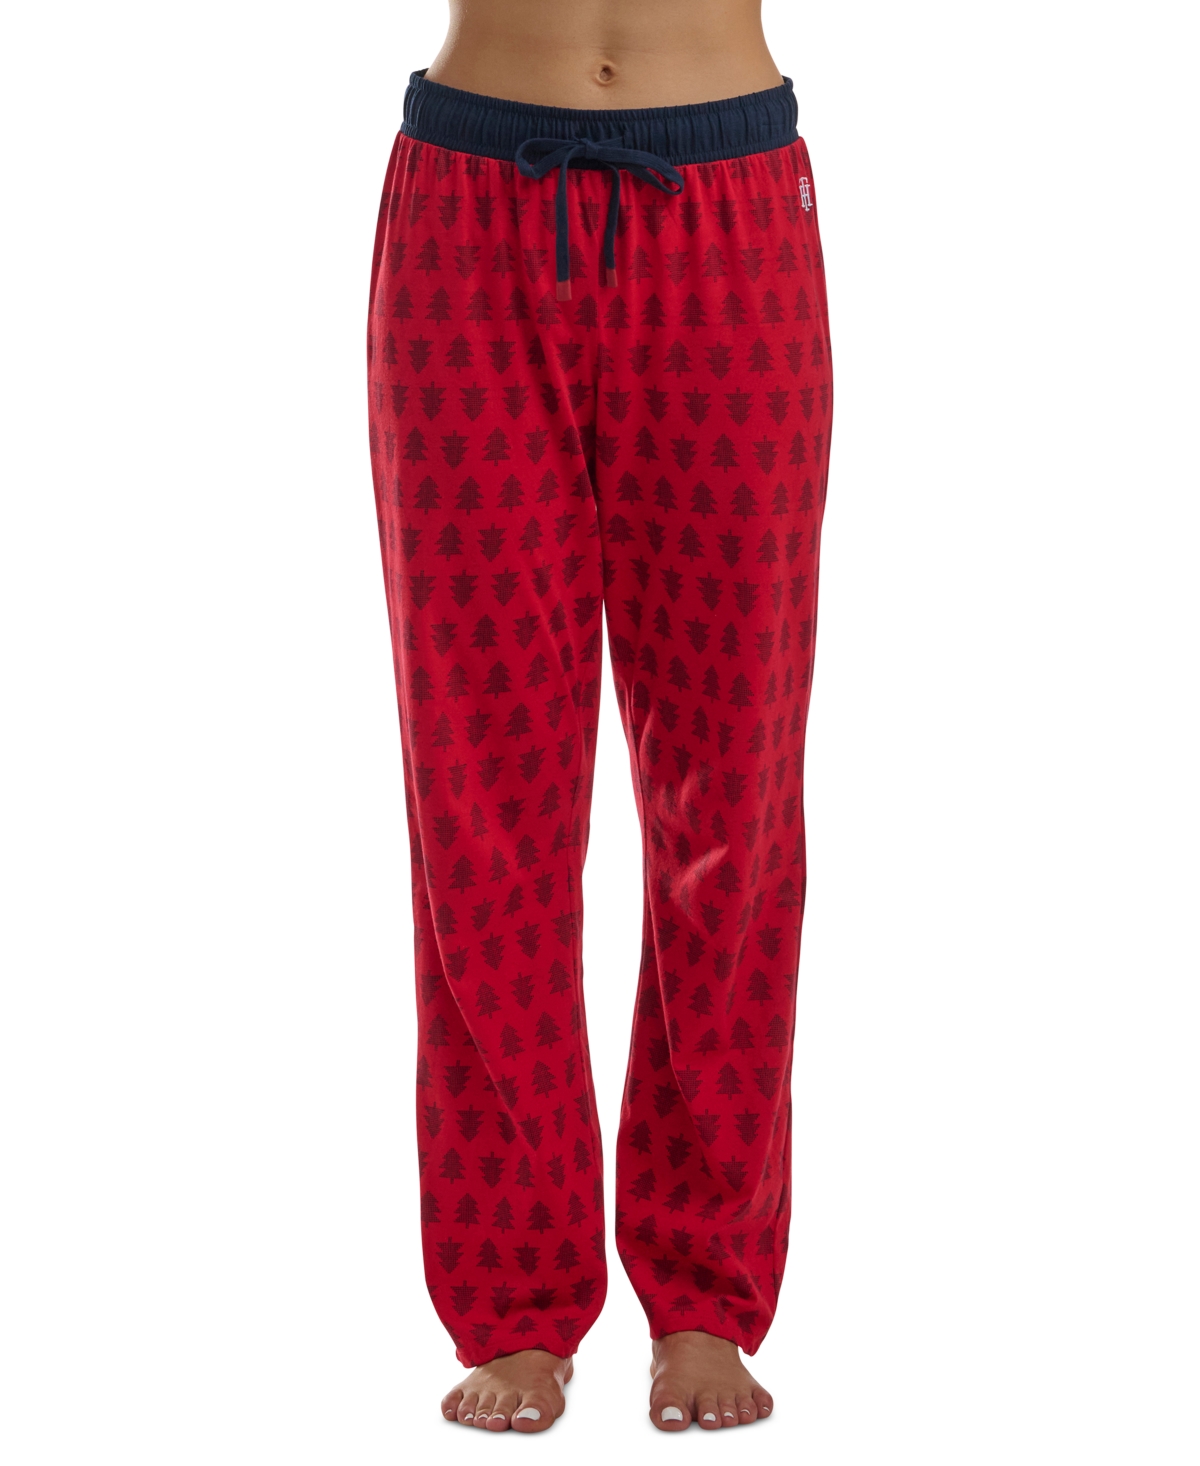 Women's Knit Drawstring-Waist Pajama Pants - Pixel Trees